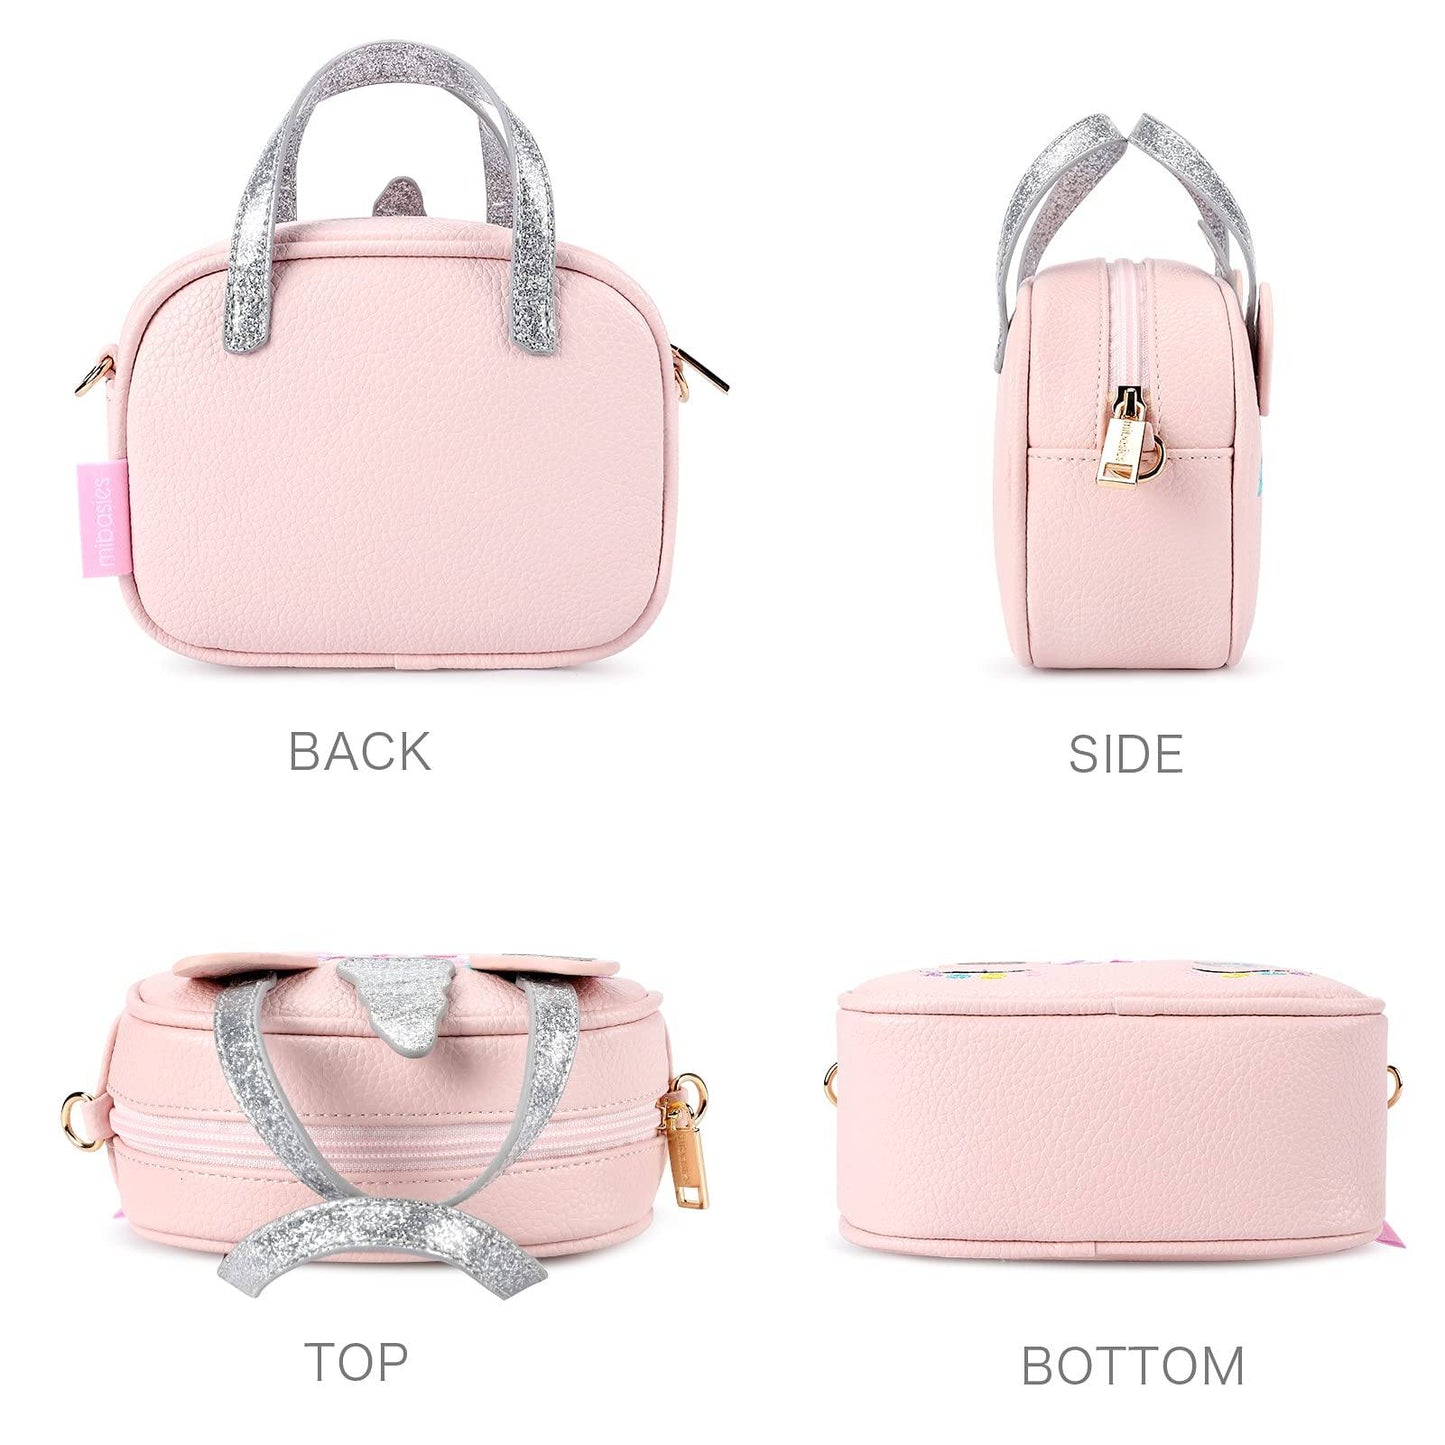 Jasmine Handbag-2021 Christmas Collection Handbag mibasies 